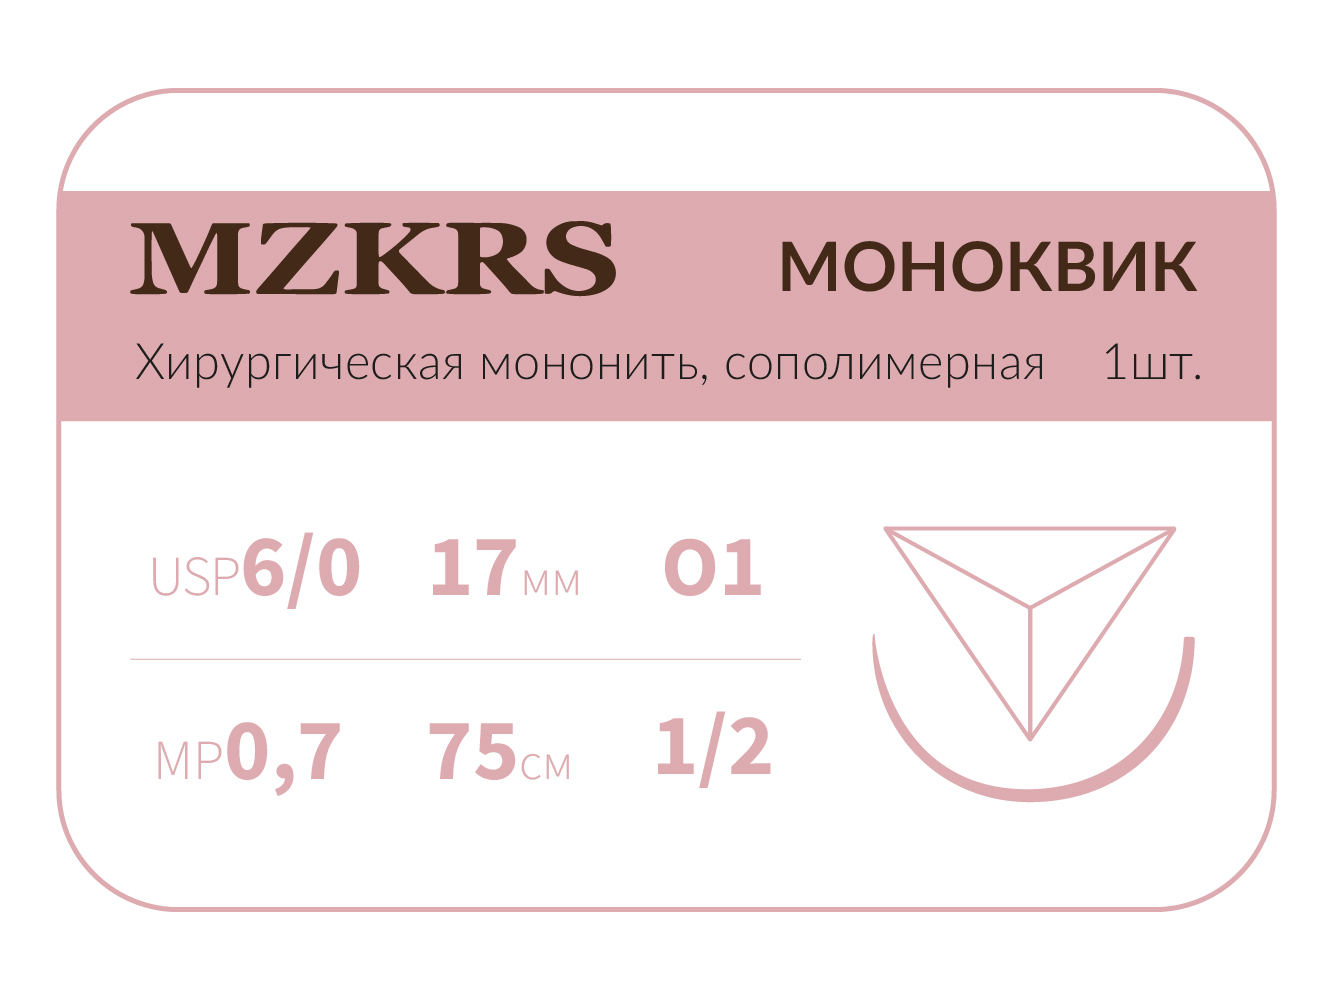 1712О1 Premium-6/0 (0,7)75 МОНК МОНОКВИК хирургическая мононить, сополимерная, обратно-режущая игла, MZKRS (Россия)